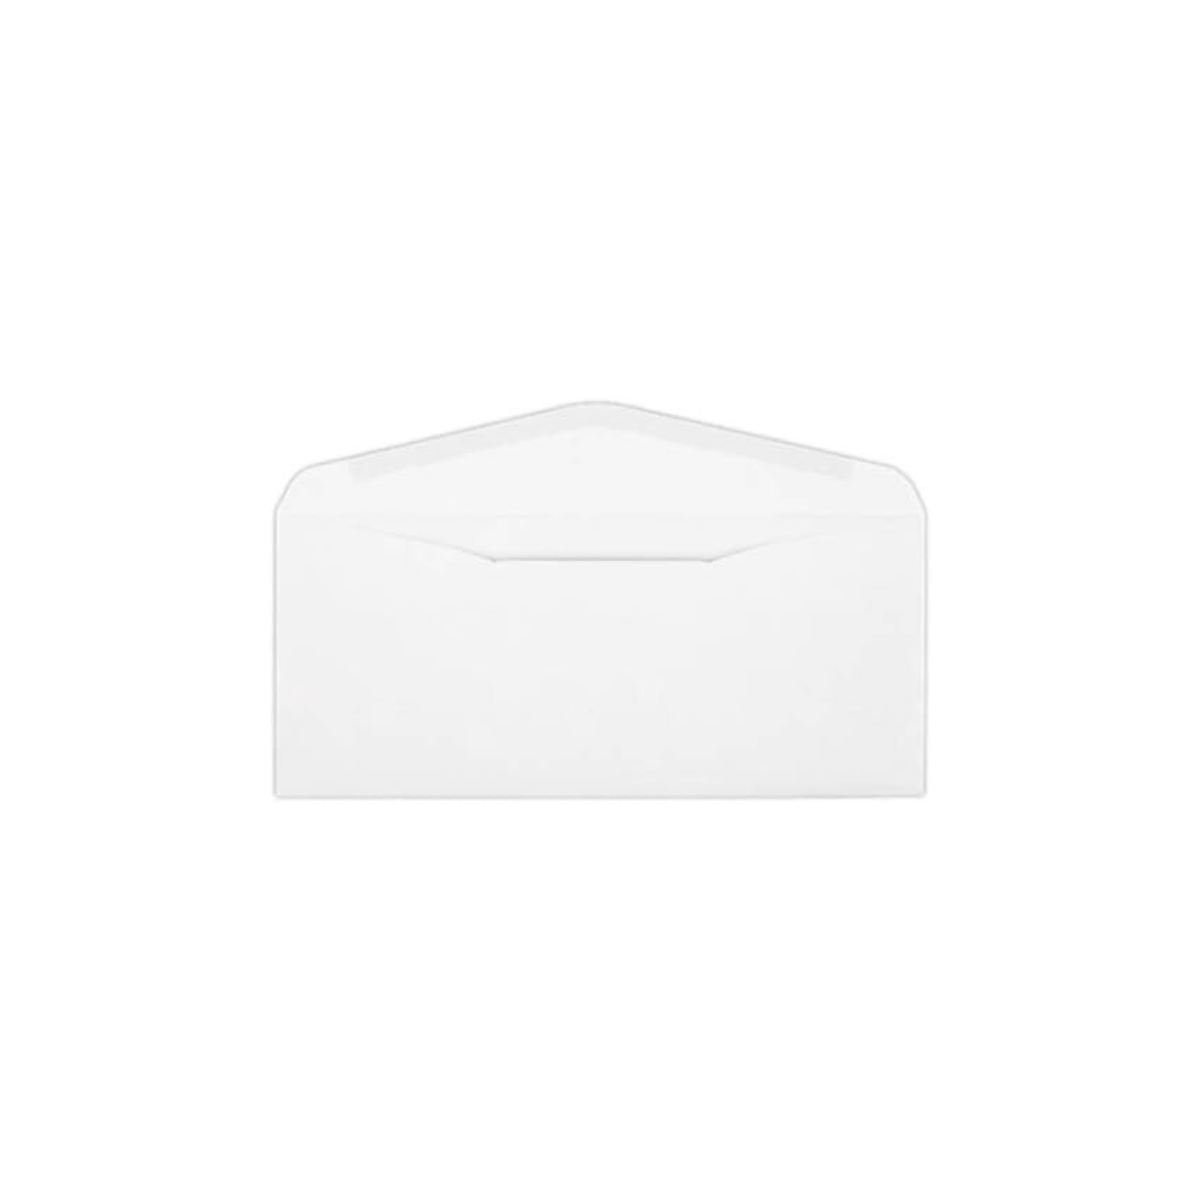 Reskid #9 Envelopes - 2500 Bulk Box - 3 7/8" x 8 7/8" Small Return Envelopes - Blank Windowless White Envelopes